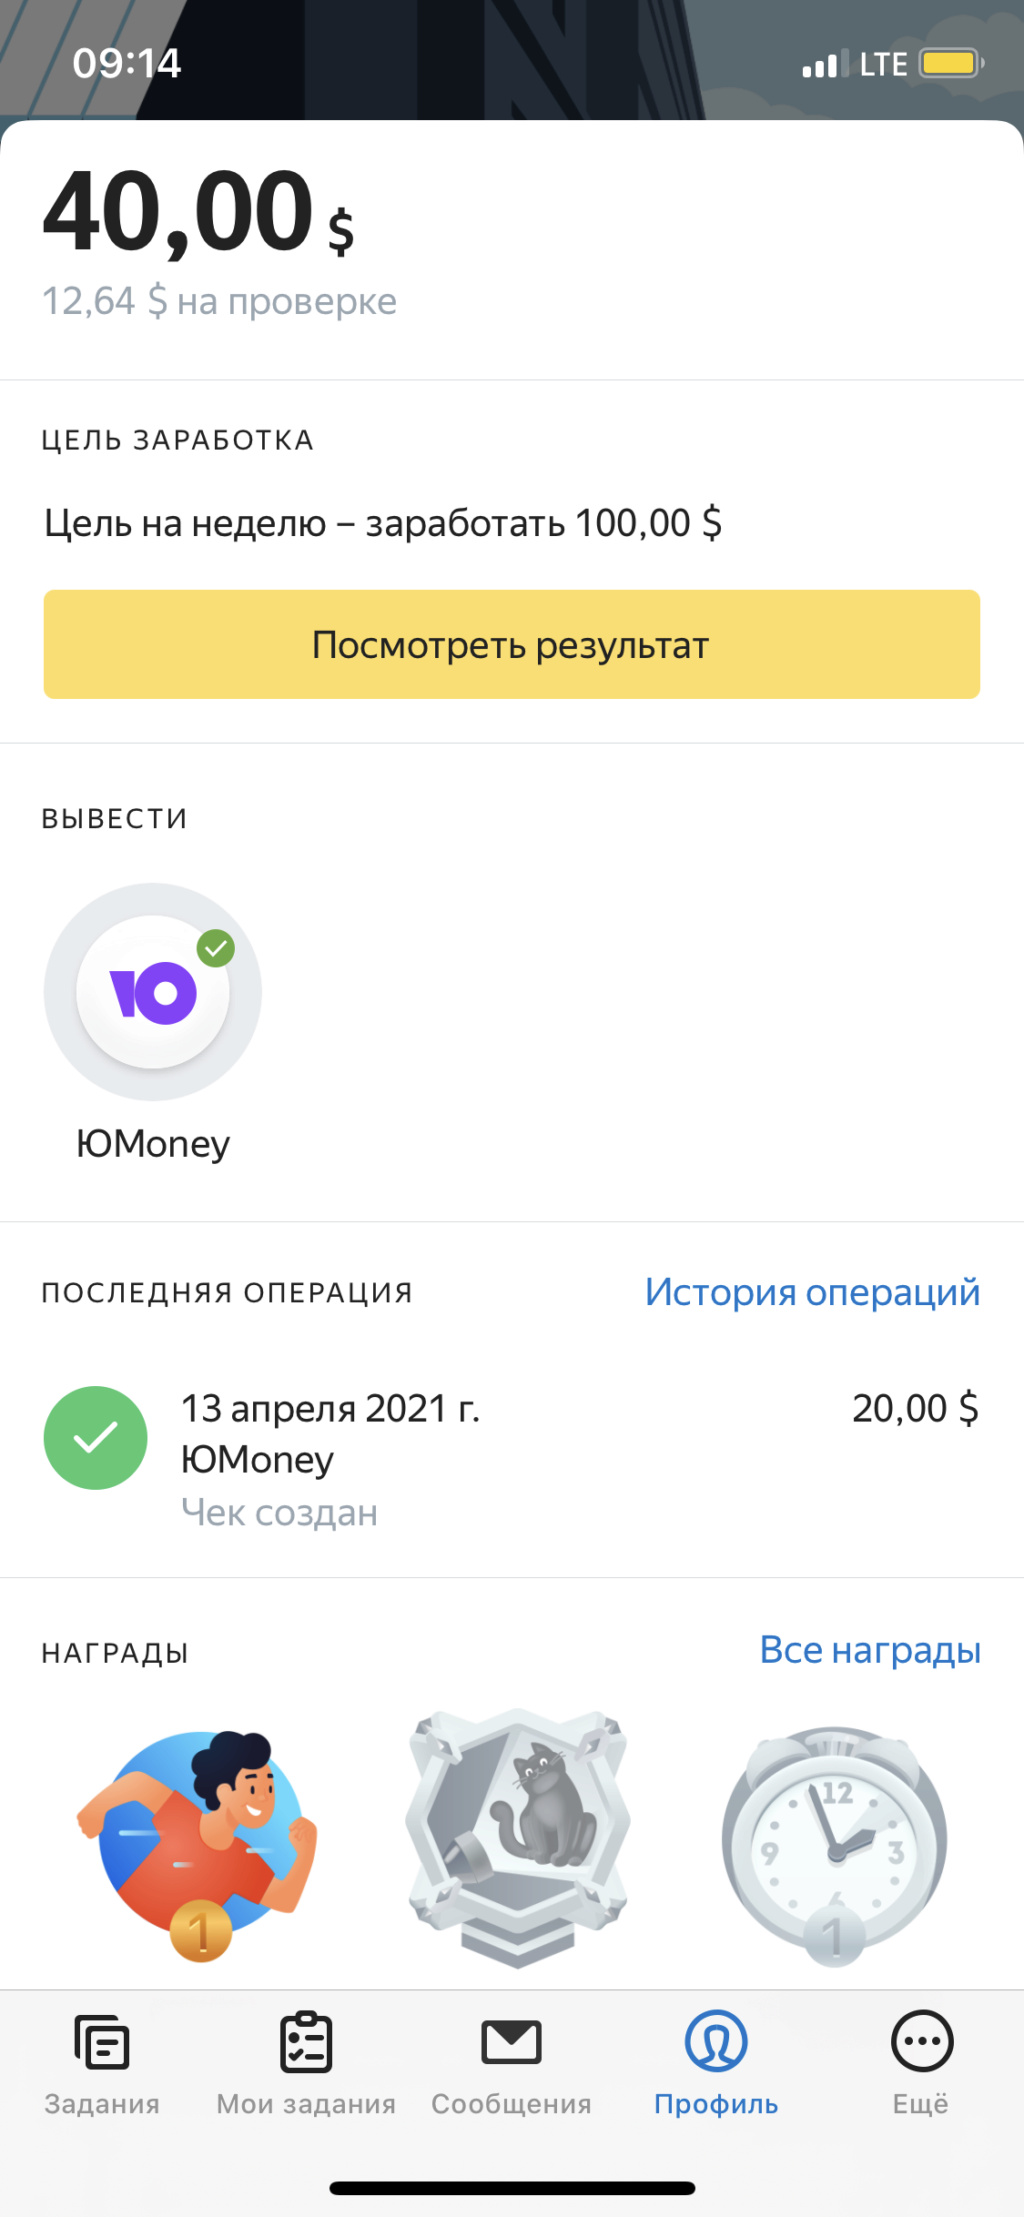 Яндекс.Толока - удобное приложение для подработки D70ef310